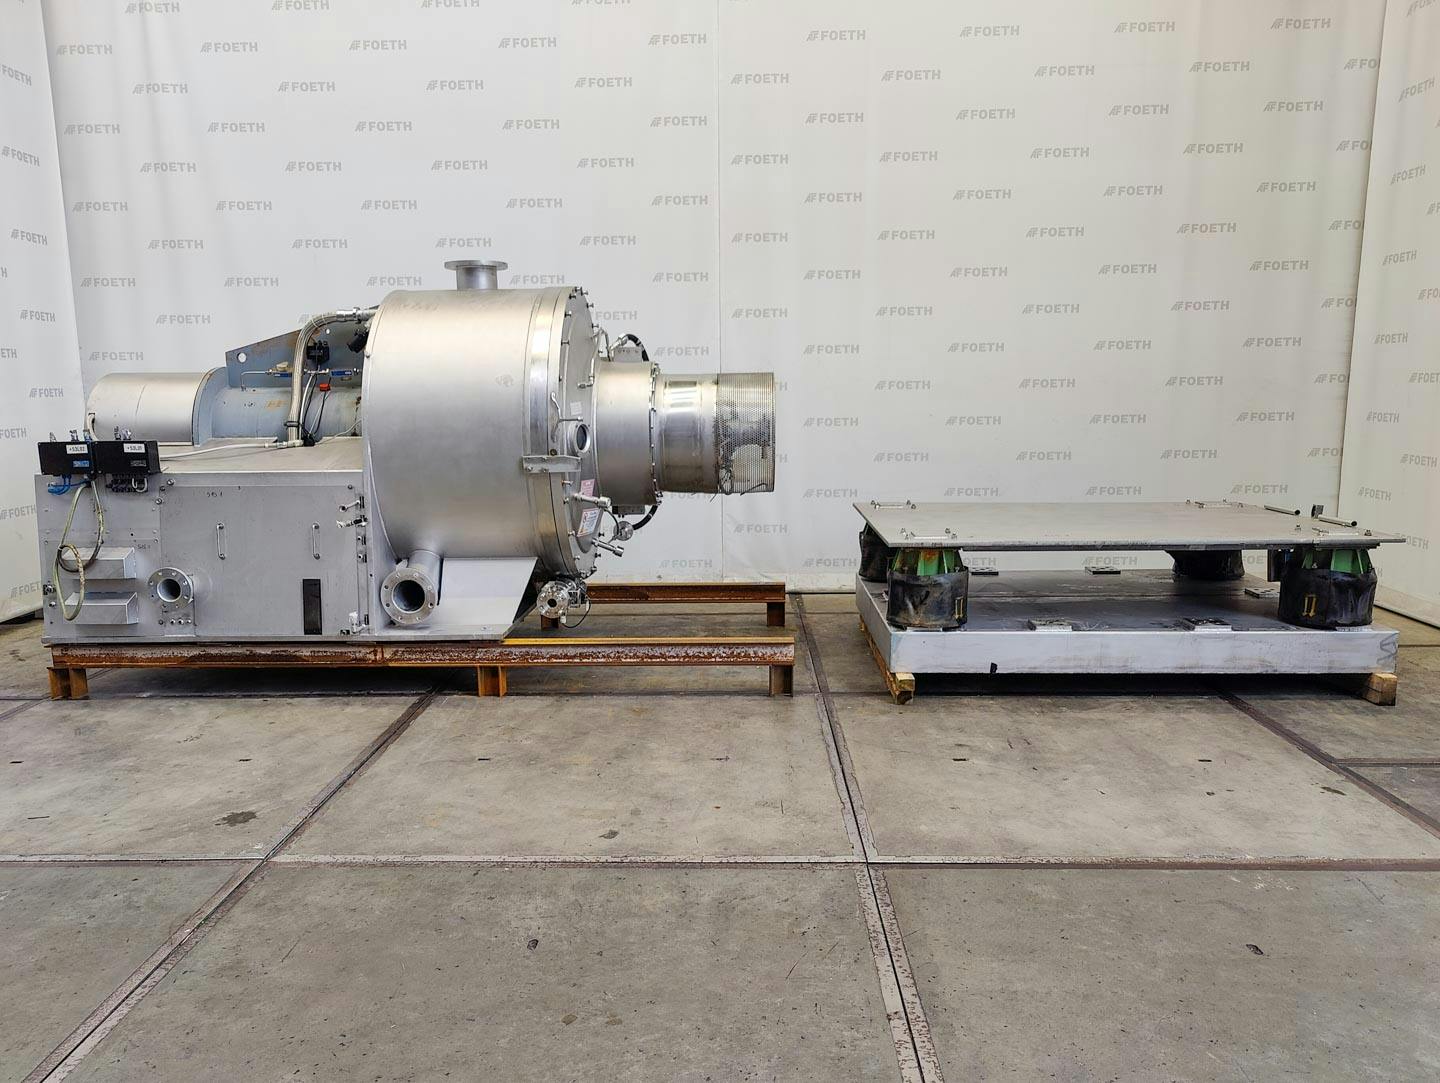 Fima Process Trockner TZT-1300 - centrifuge dryer - Wirówka koszowa - image 1